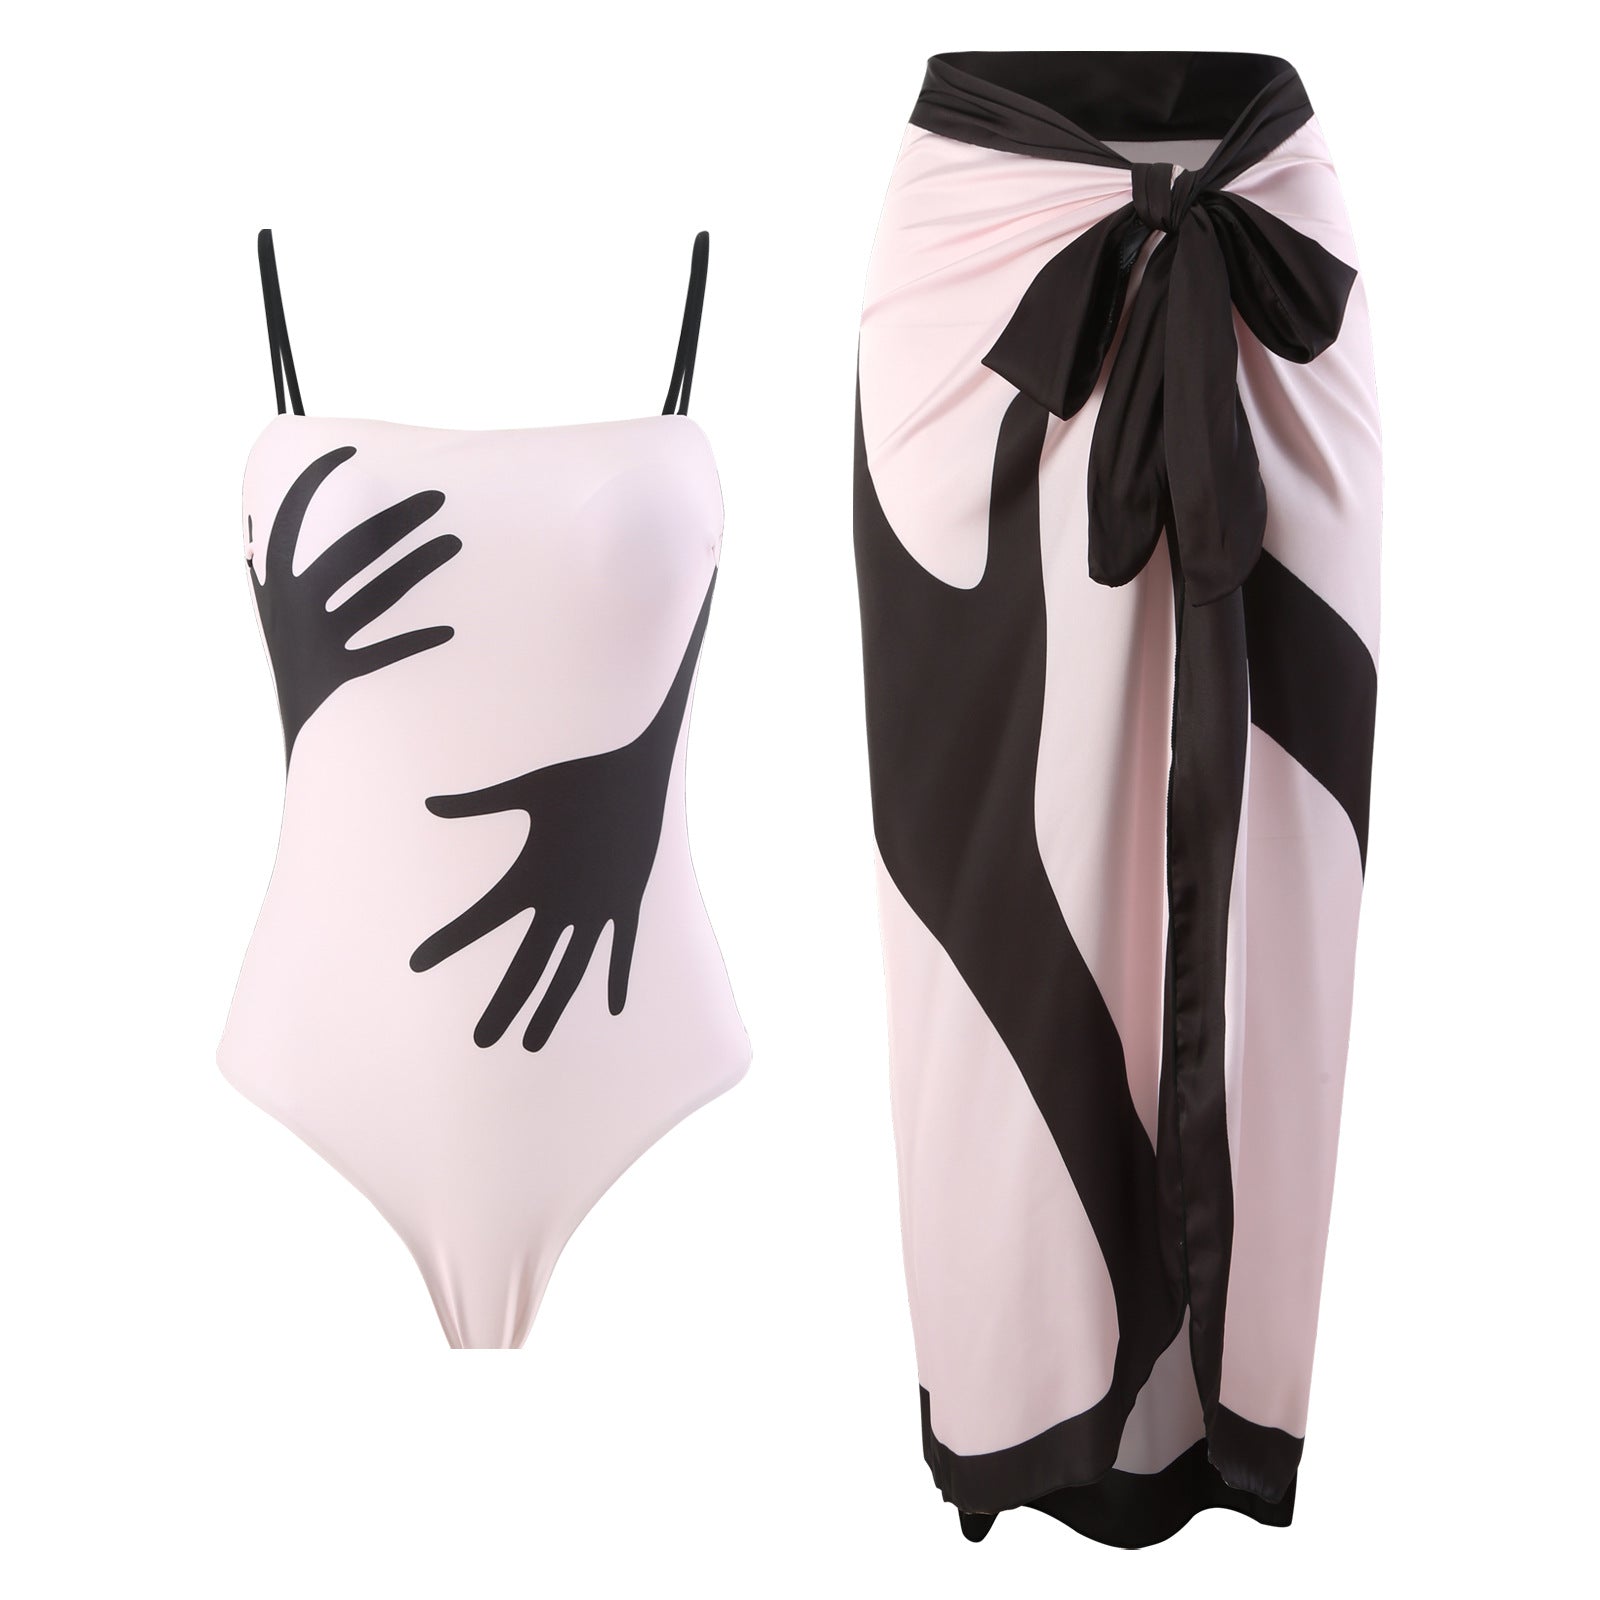 Women's Fashion One-piece Bikini Two Pieces – Storage Product Sales